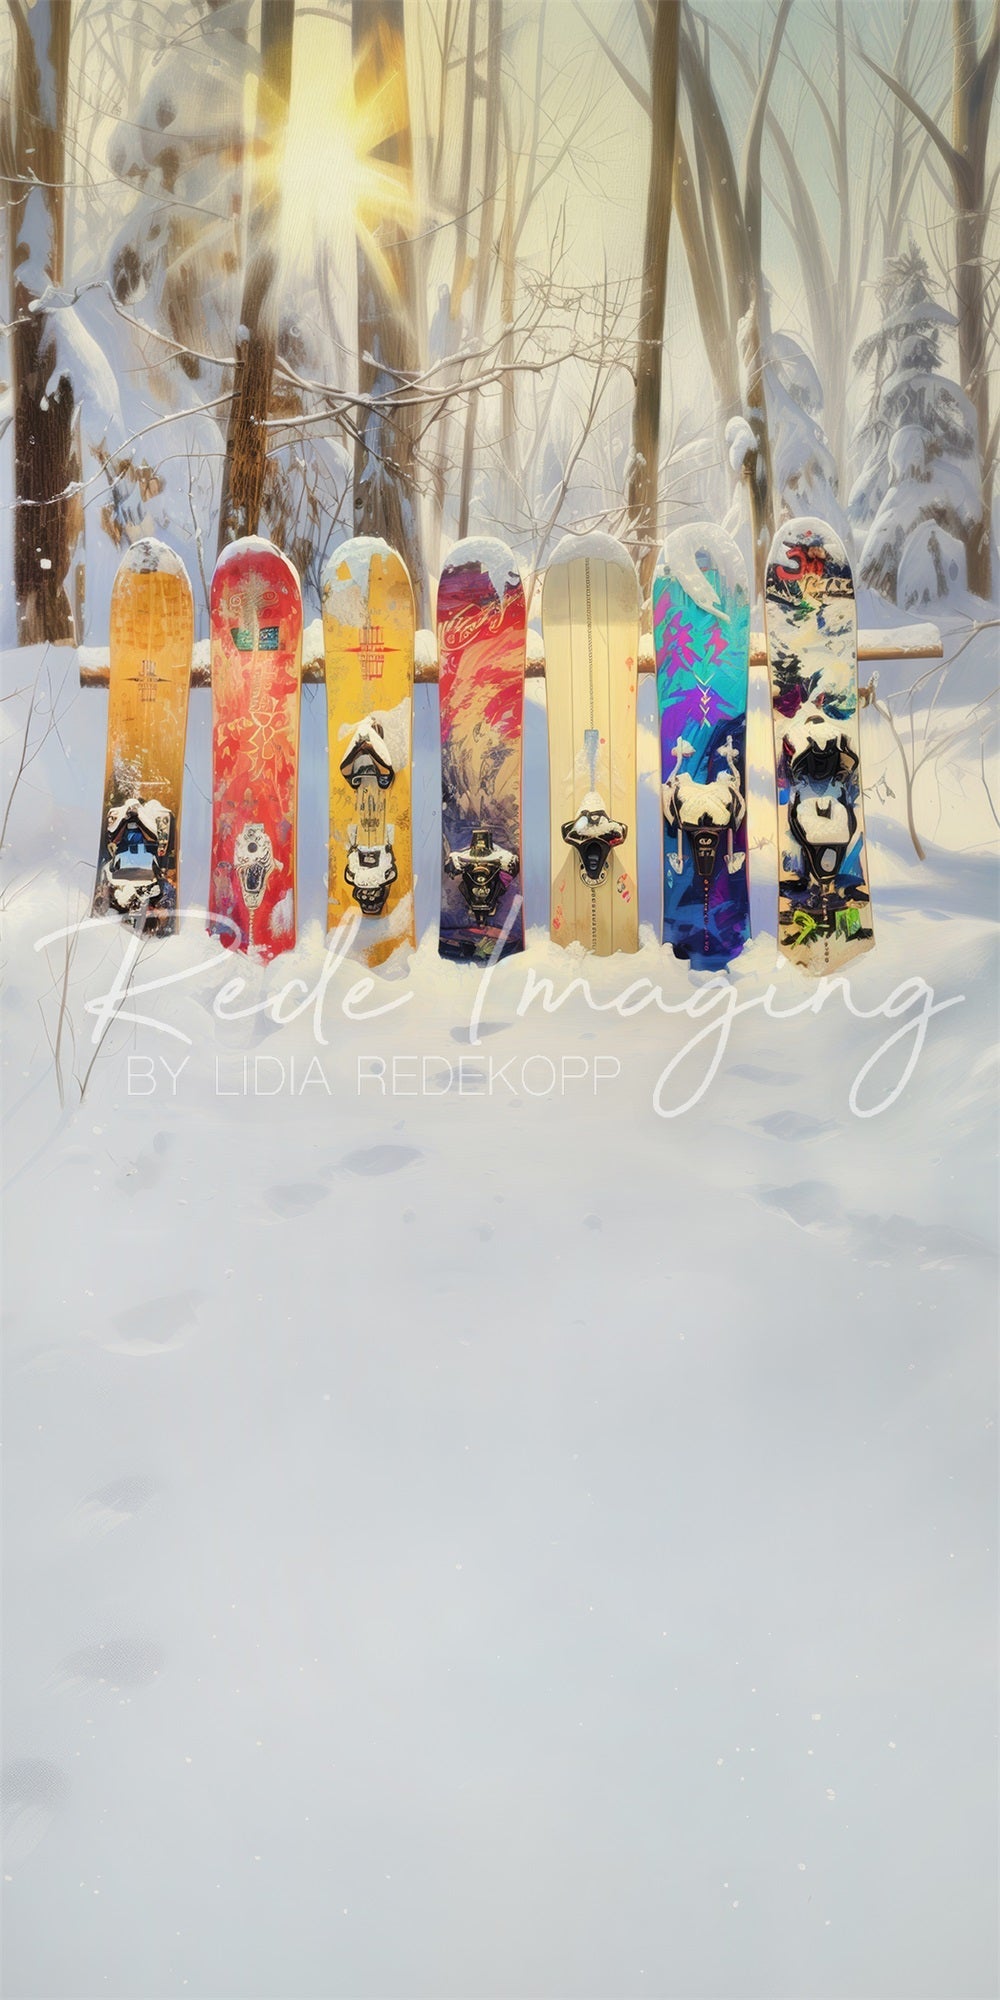 Winterbos met kleurrijke graffiti-snowboardachtergrond ontworpen door Lidia Redekopp